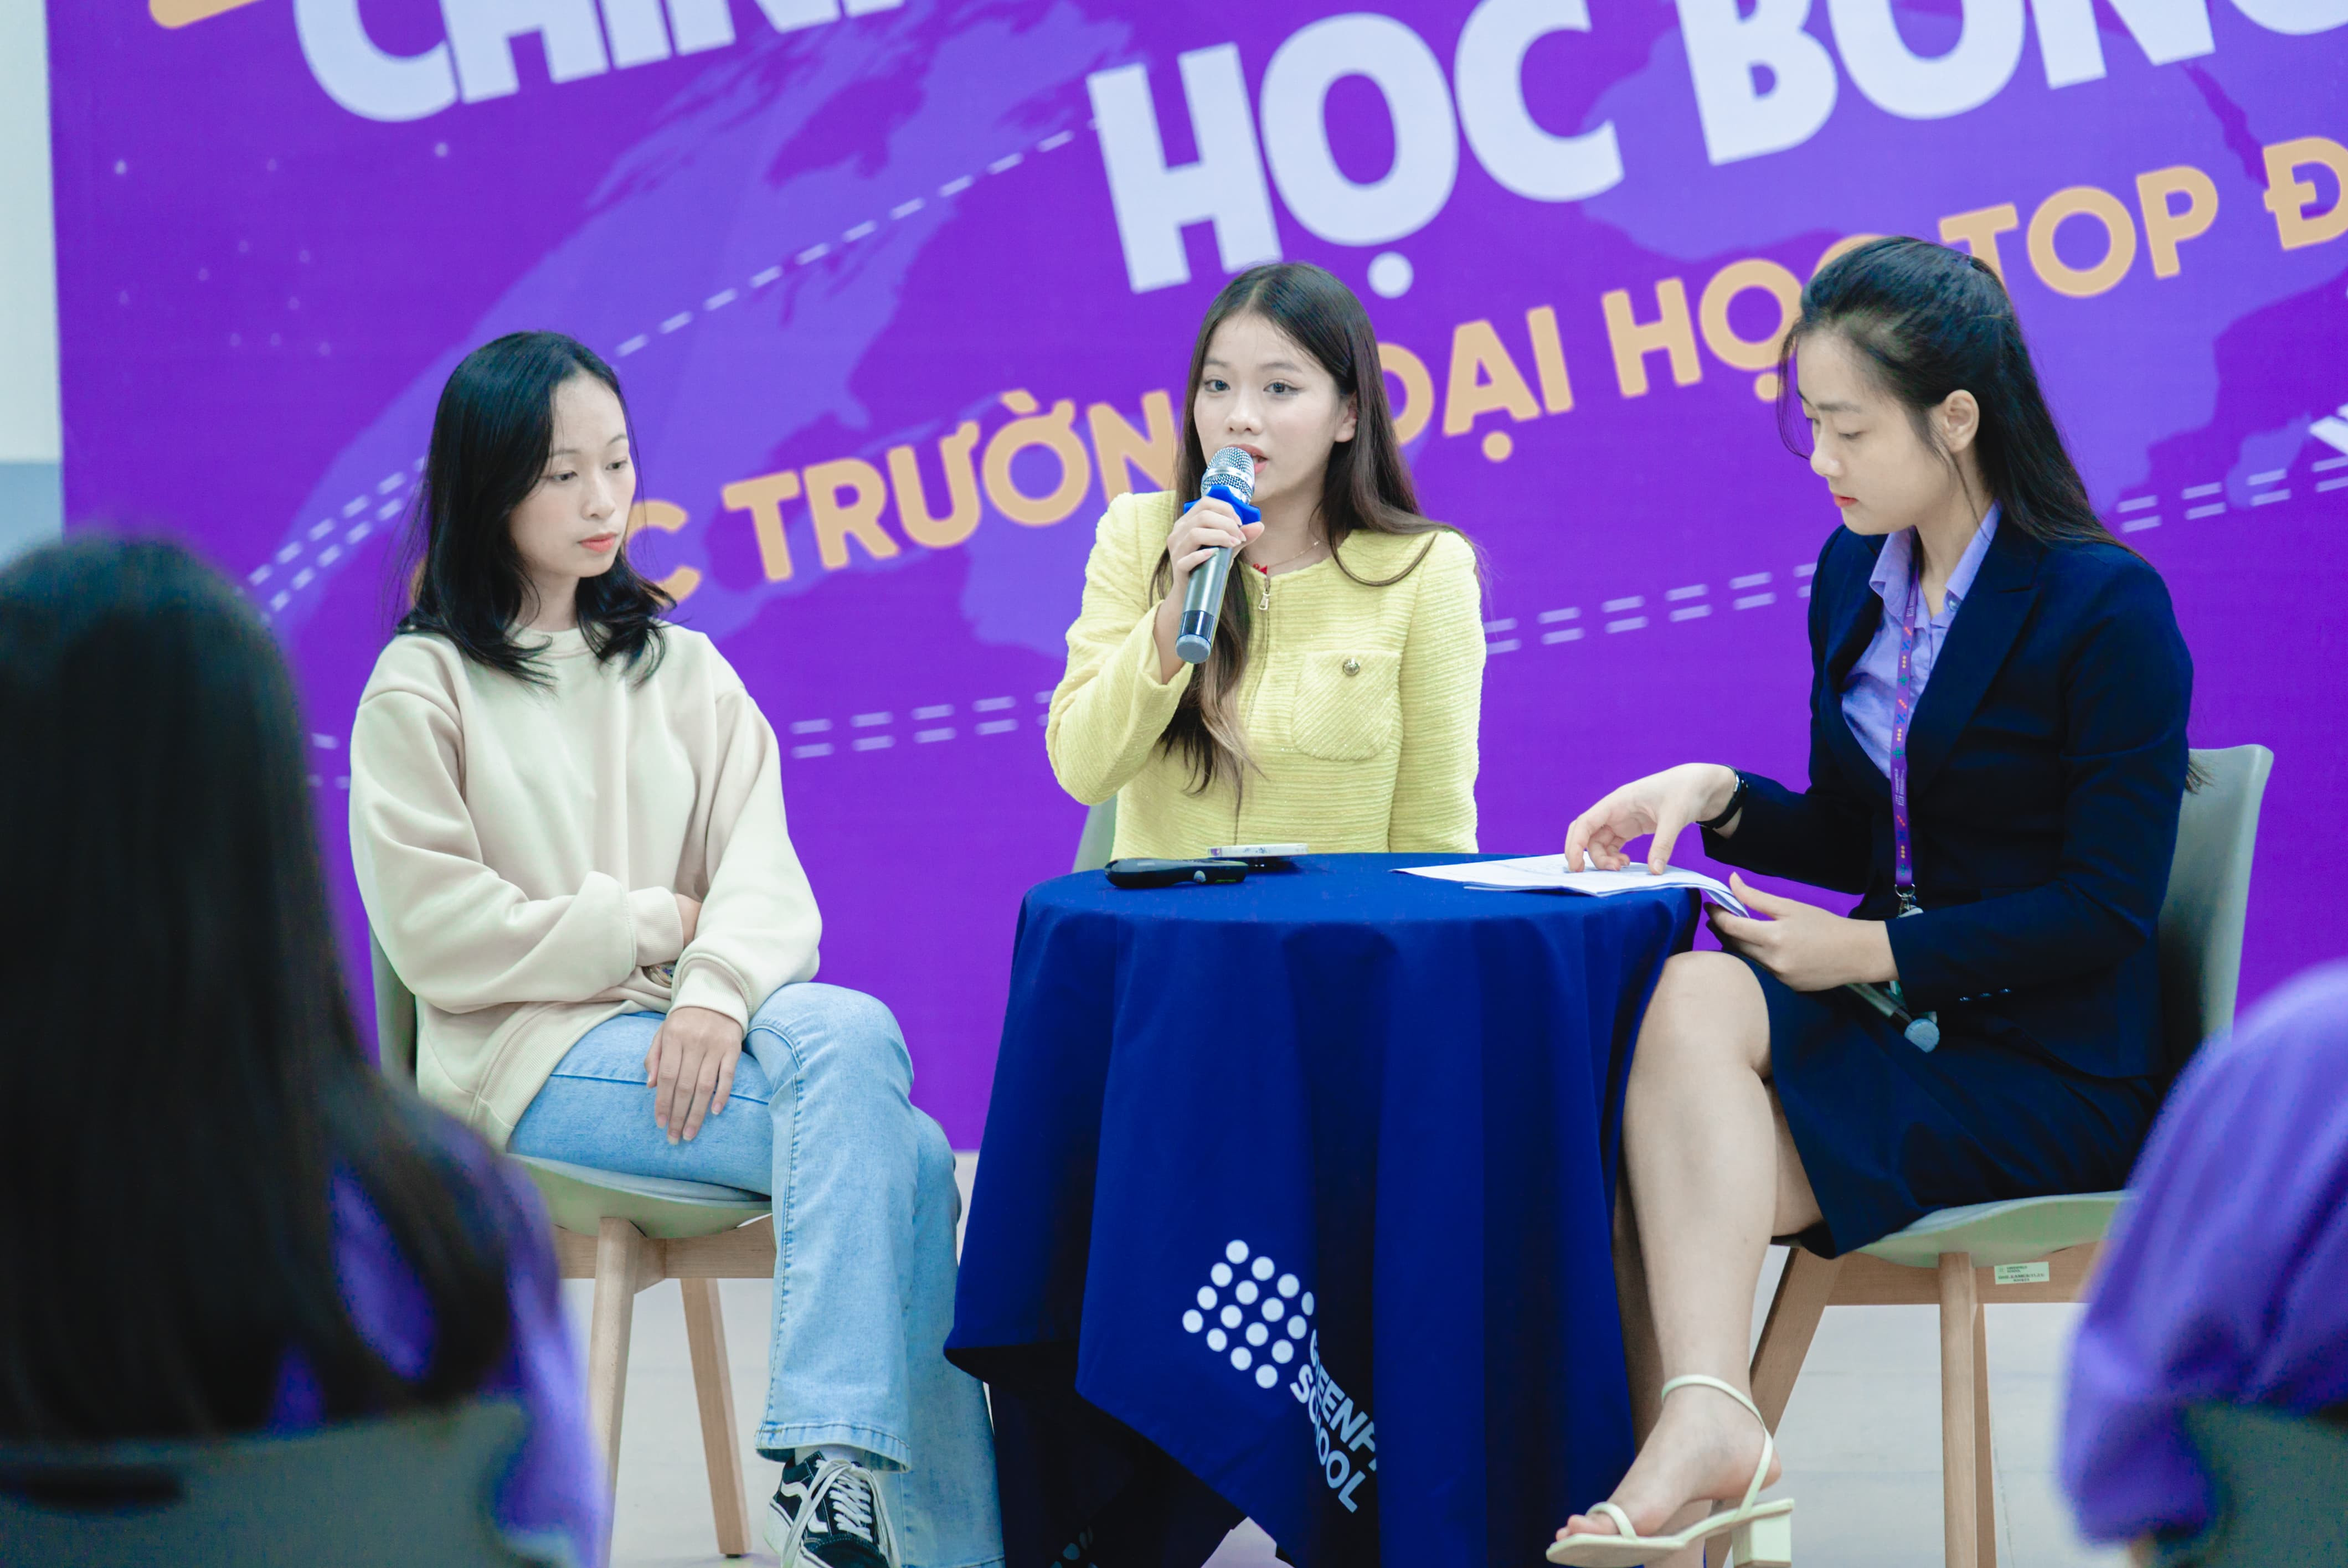 Workshop hướng nghiệp: Học sinh THPT nắm trọn bí kíp chinh phục học bổng Đại học hàng đầu Việt Nam
